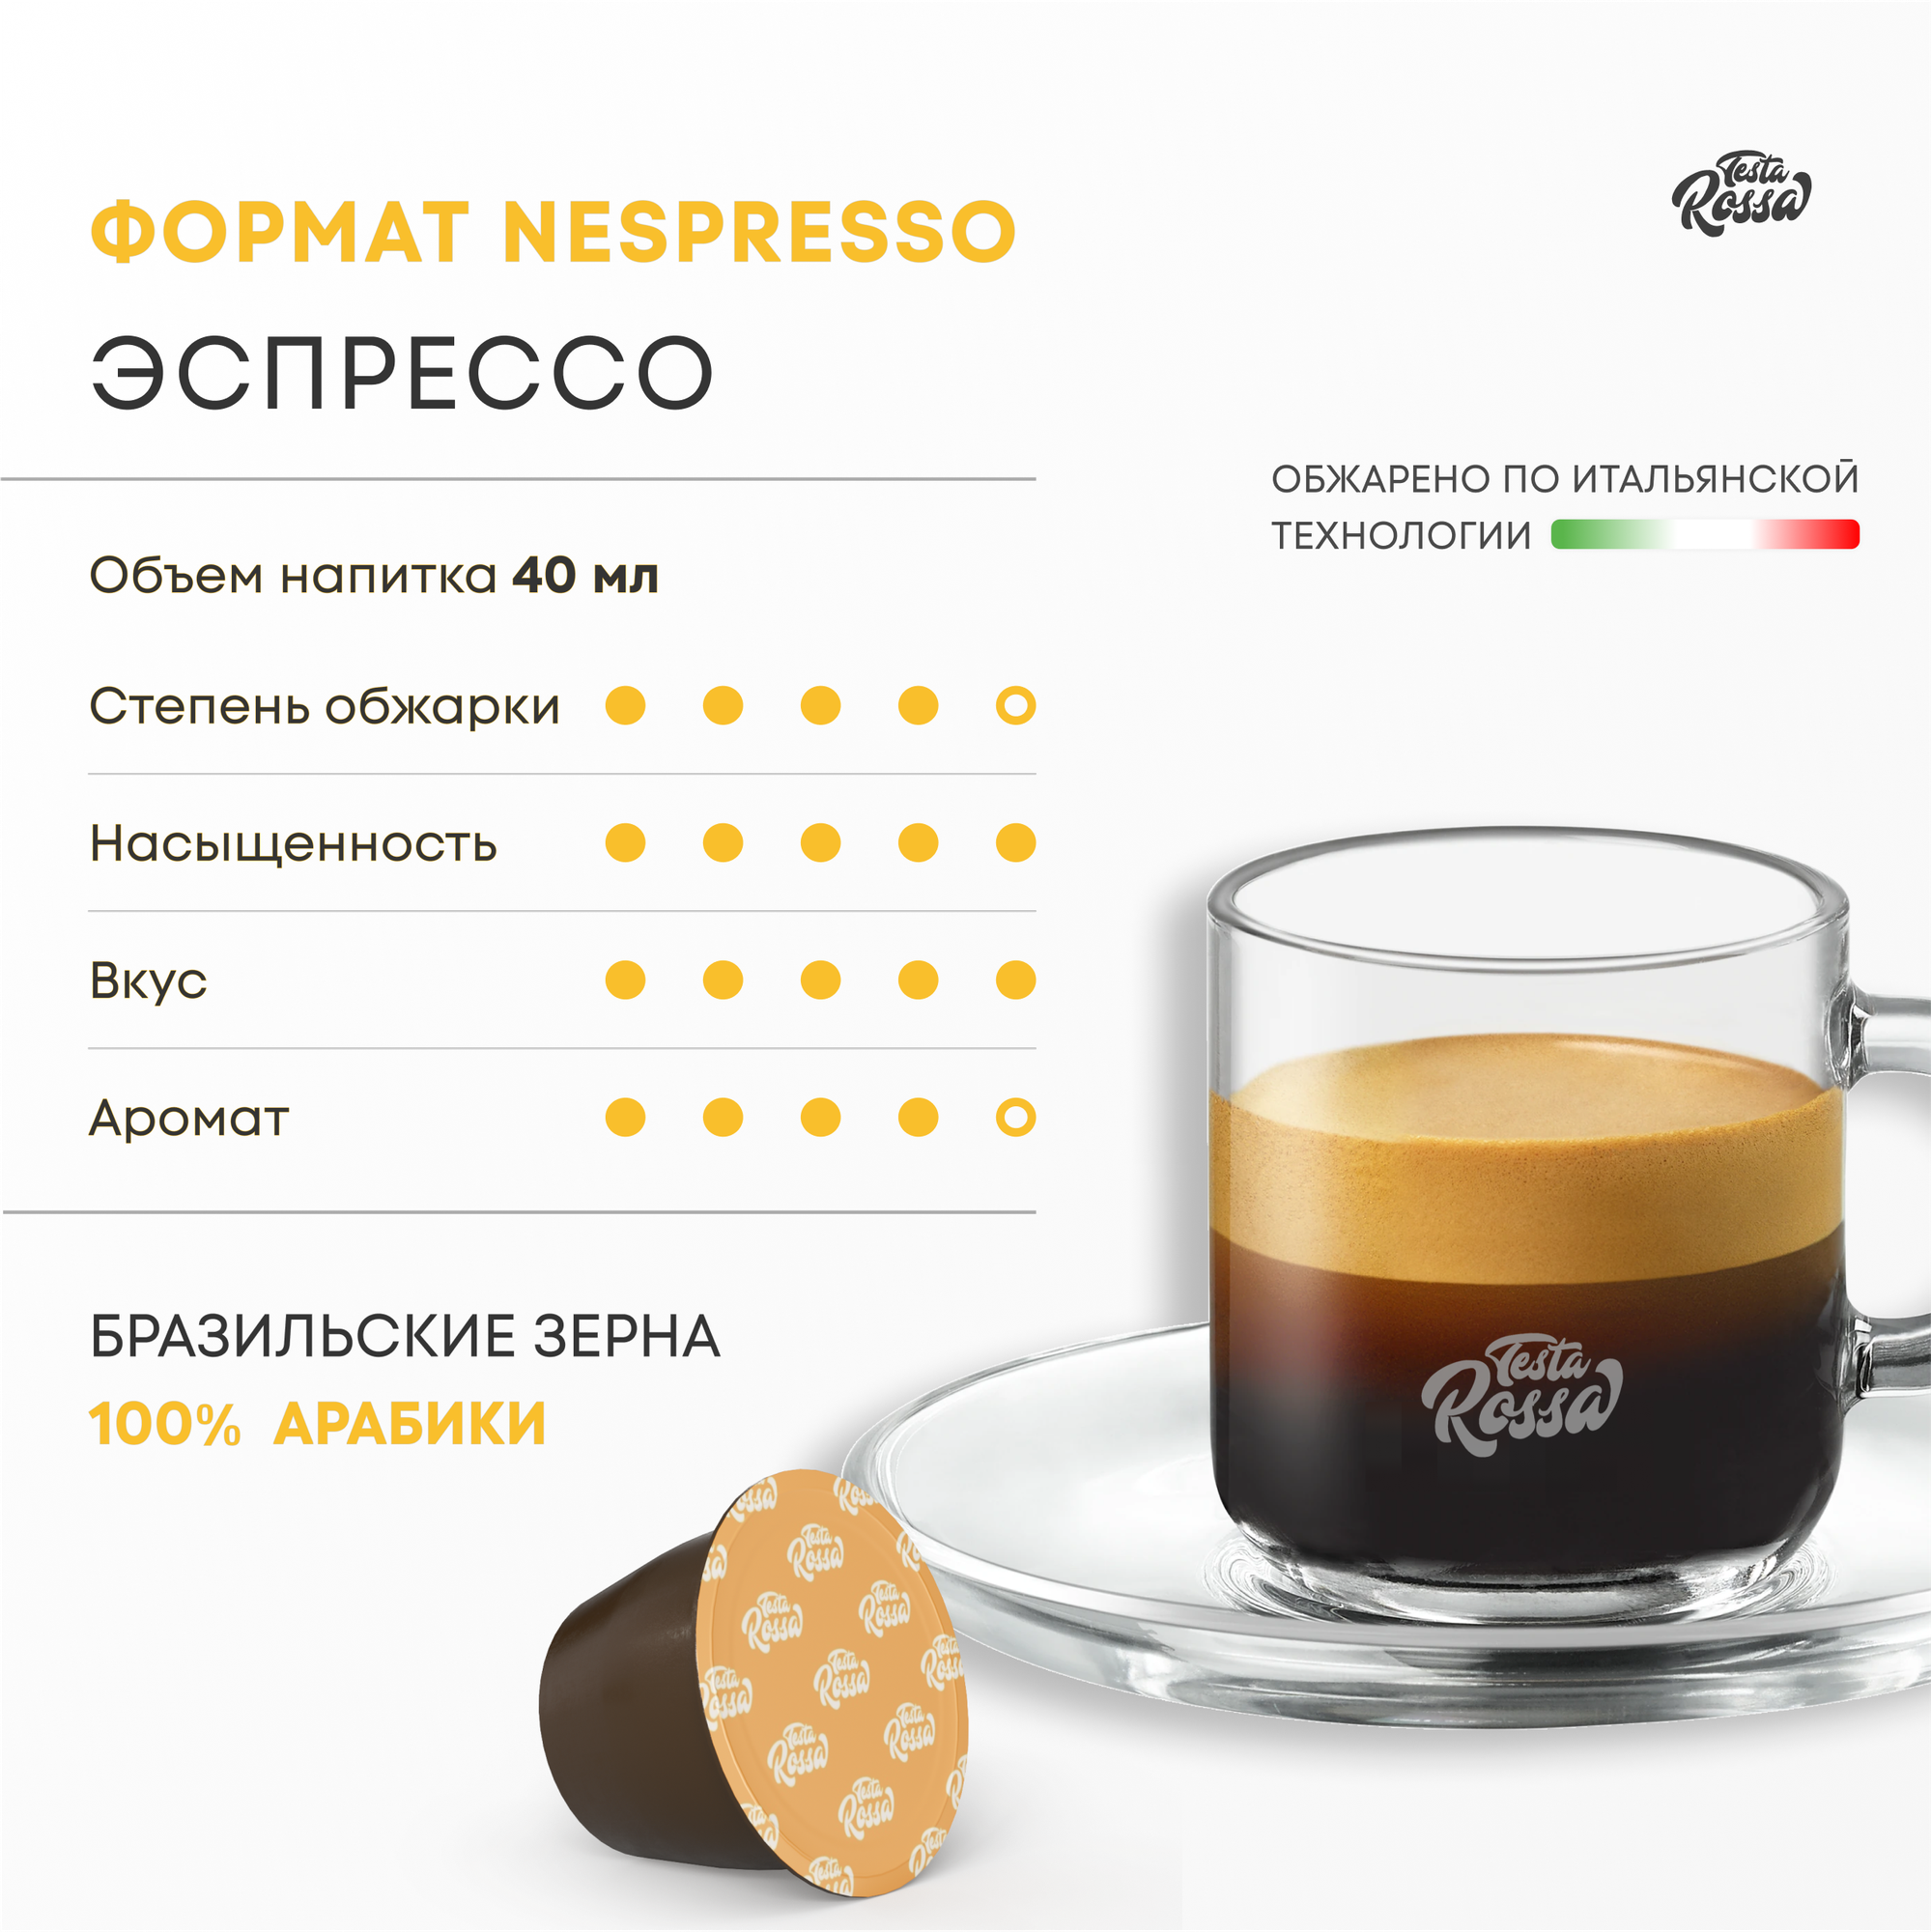 Эспрессо Арабика 100% - Капсулы Testa Rossa - 20 шт, набор кофе в капсулах неспрессо, для кофемашины NESPRESSO - фотография № 3